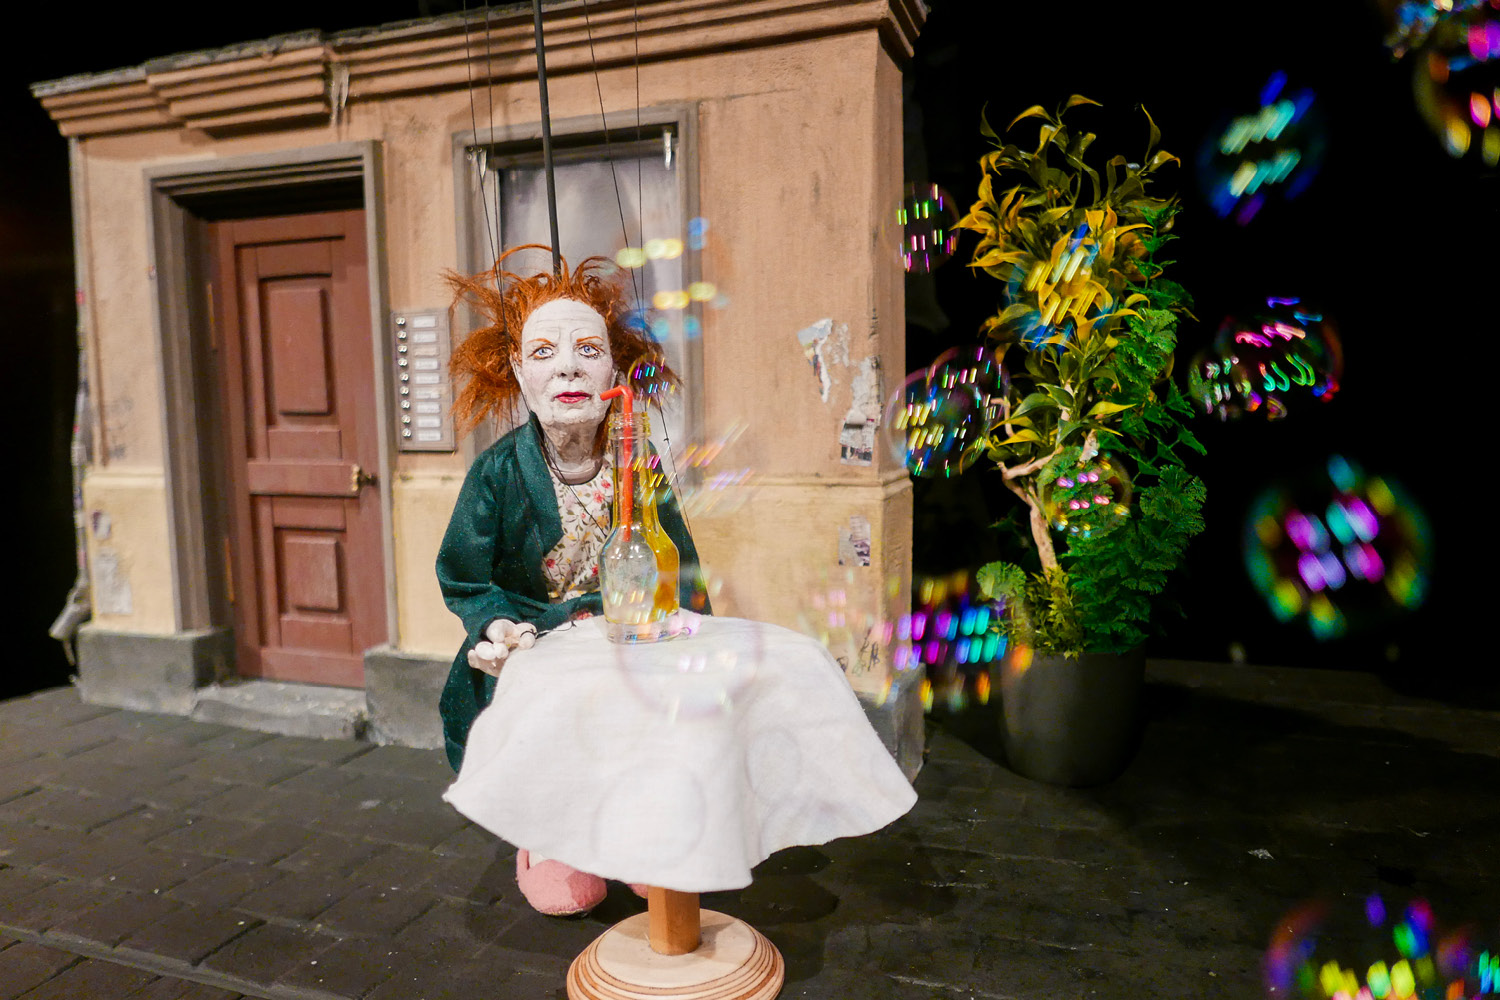 Eine rothaarige Marionettenfrau sitzt an einem runden Esstisch mit weißer Serviette und Kerze. Hinter ihr ist ein Haus mit einer Tür. Sie wird von Seifenblasen angepustet.